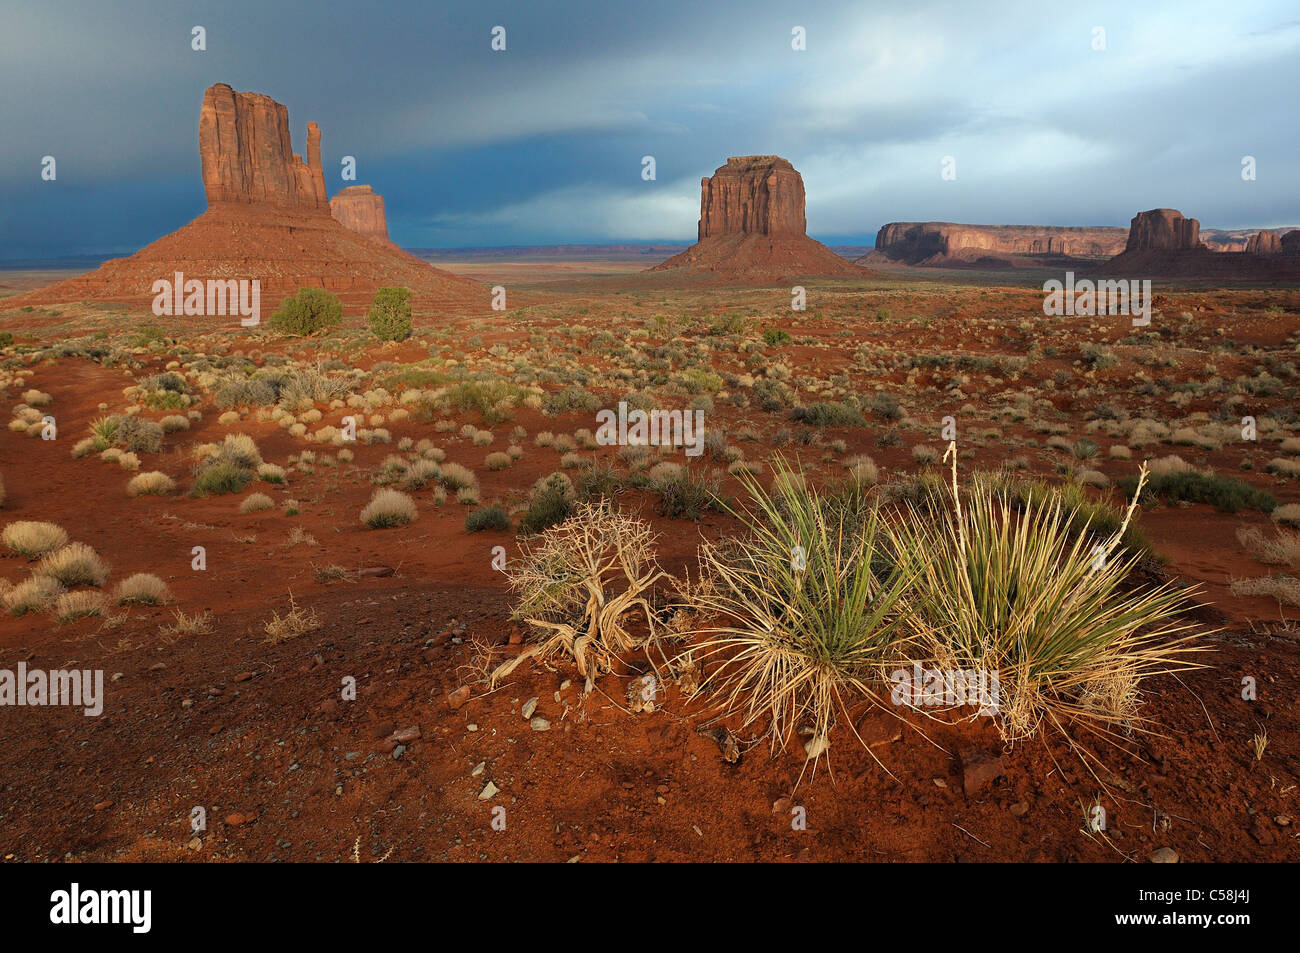 Monument Valley Navajo Tribal Park, Arizona, Utah, EE.UU., Estados Unidos, América, rocas, árboles, paisaje Foto de stock